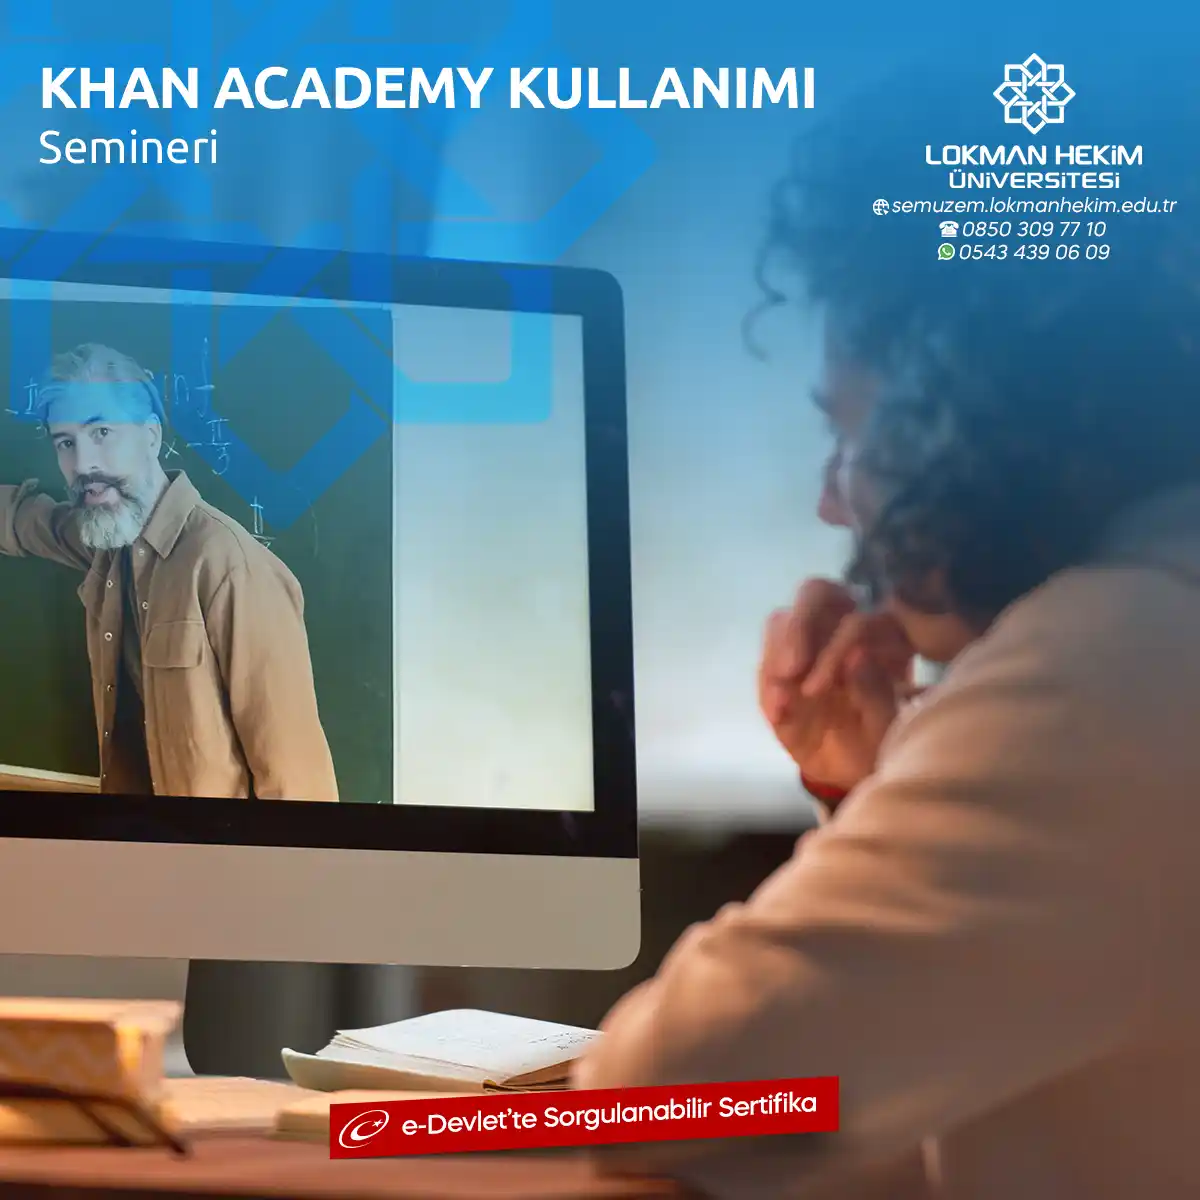 Khan Academy Kullanımı Semineri